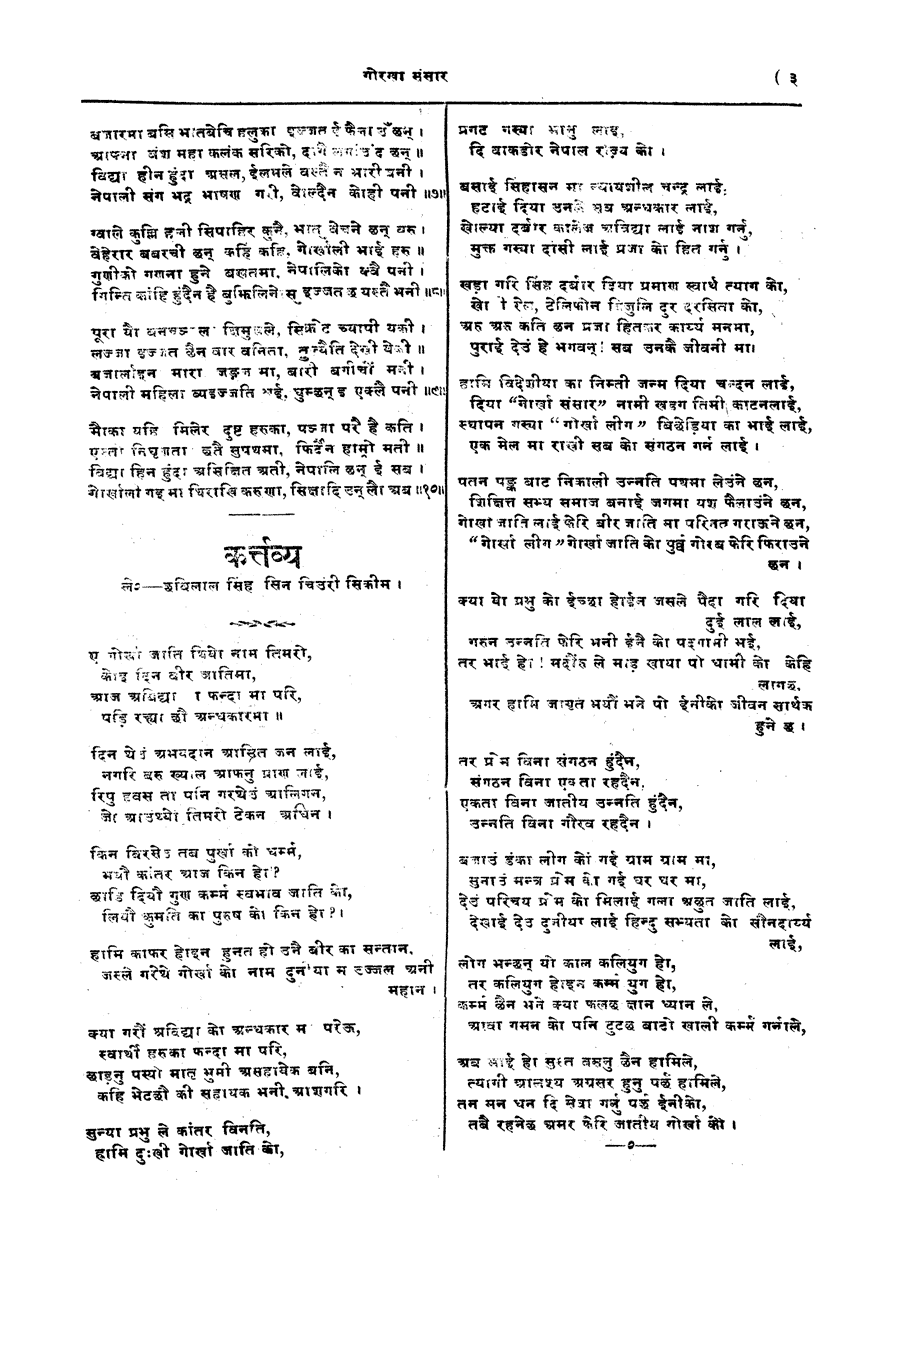 Gorkha Sansar, 13 April 1928, page 3